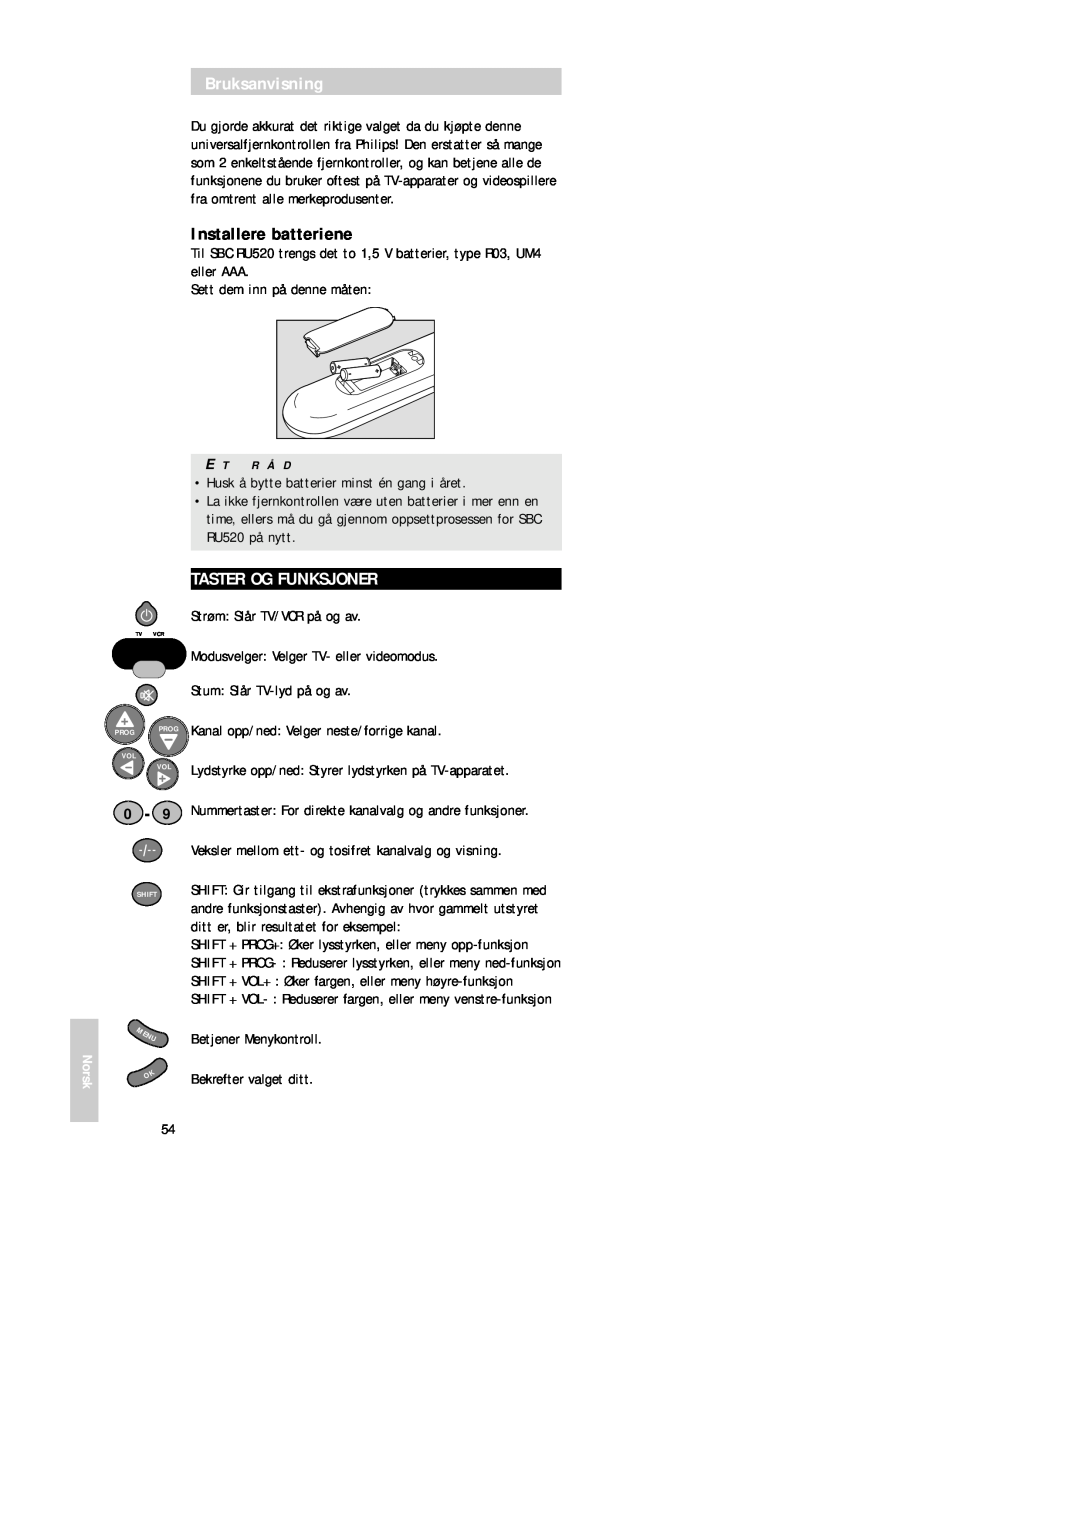 Philips SBC RU 520 manual Installere batteriene, Taster Og Funksjoner, Norsk, Kanal opp/ned Velger neste/forrige kanal, E T 